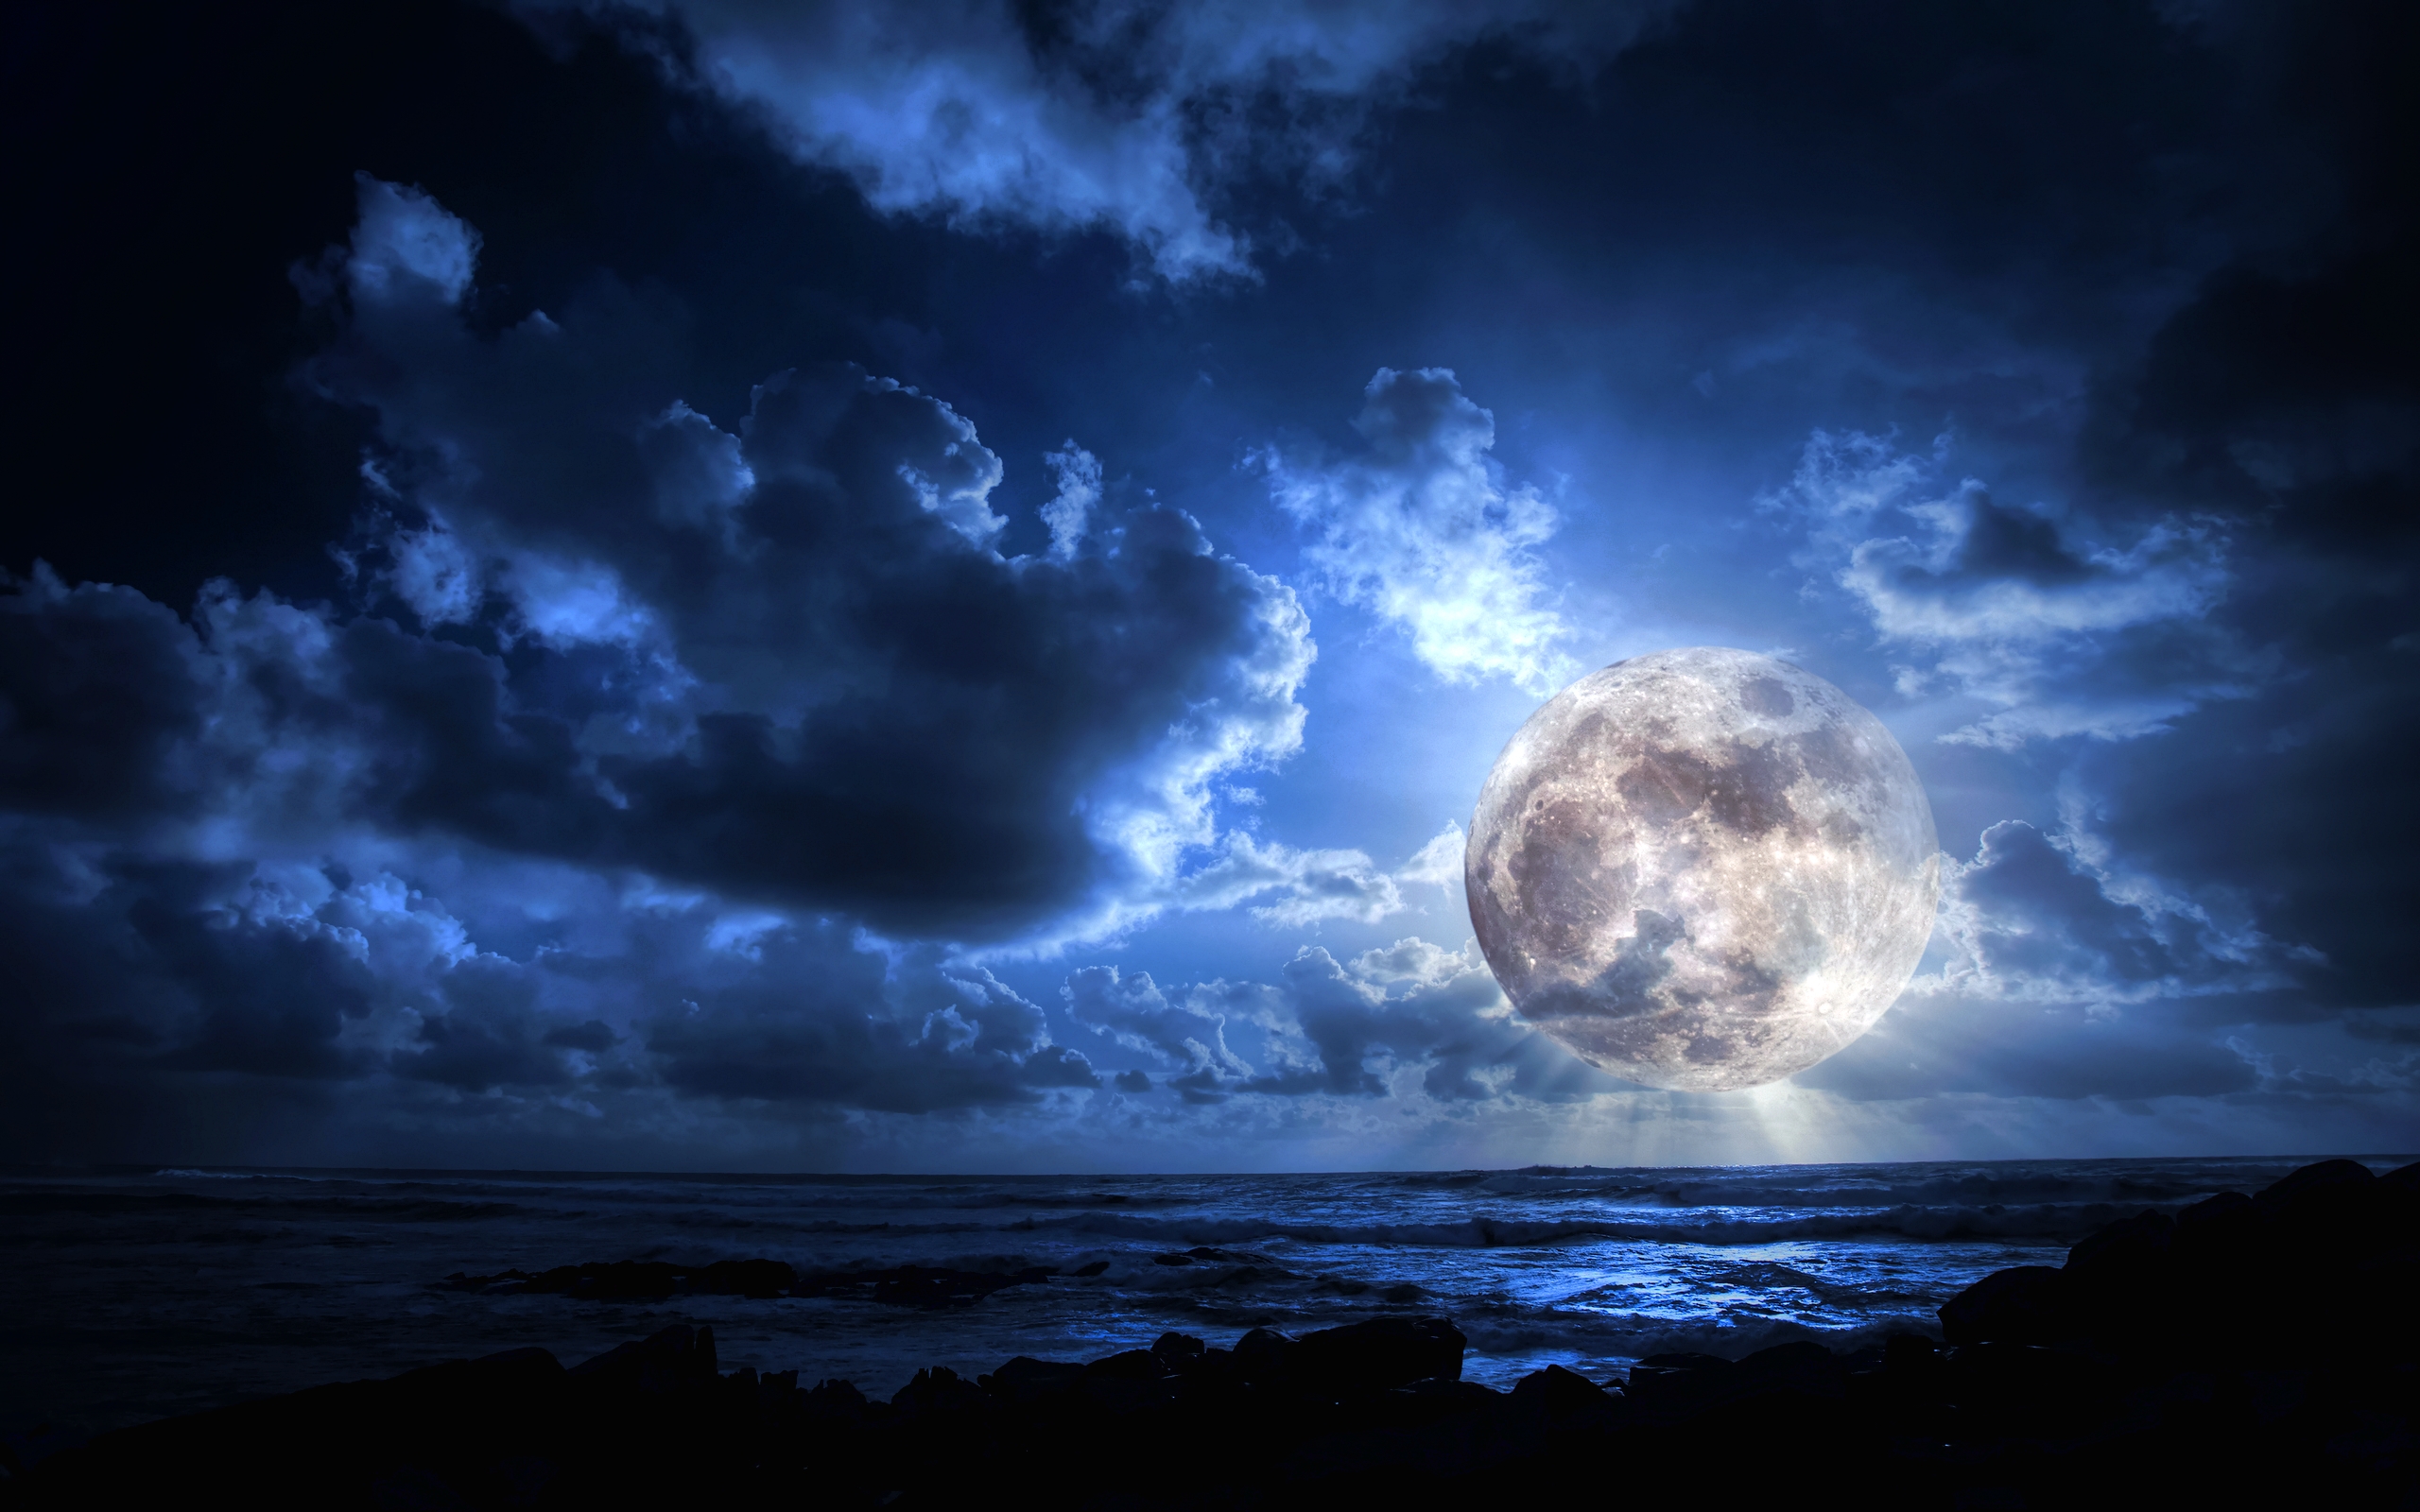 Луна, окруженная тучами, возвышается над морем